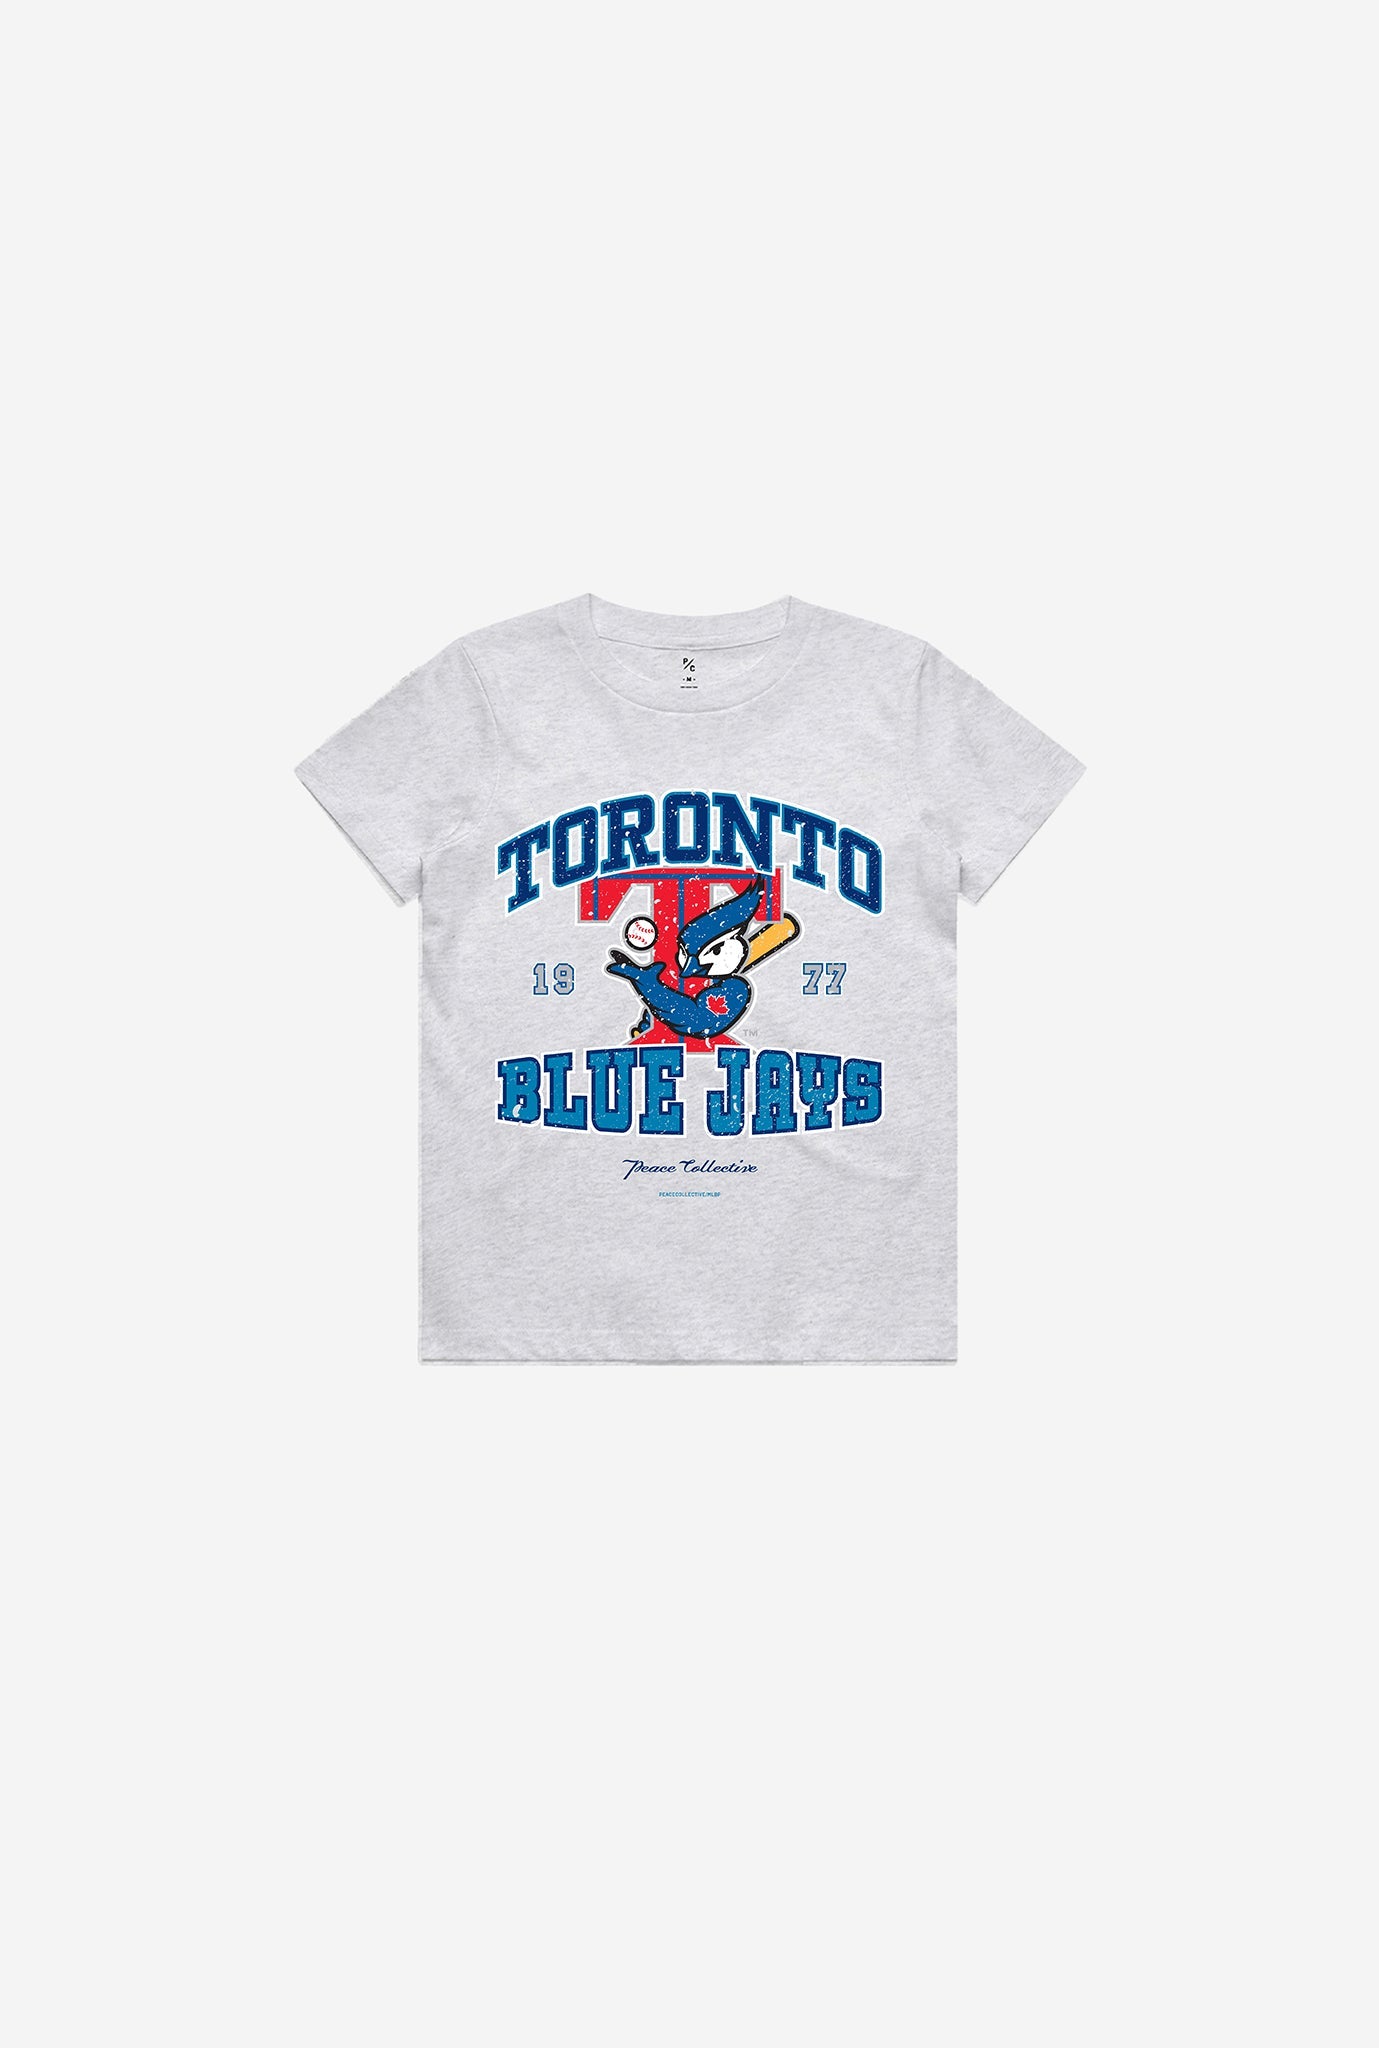 Toronto Blue Jays Vintage Washed Kids T-Shirt - Ash